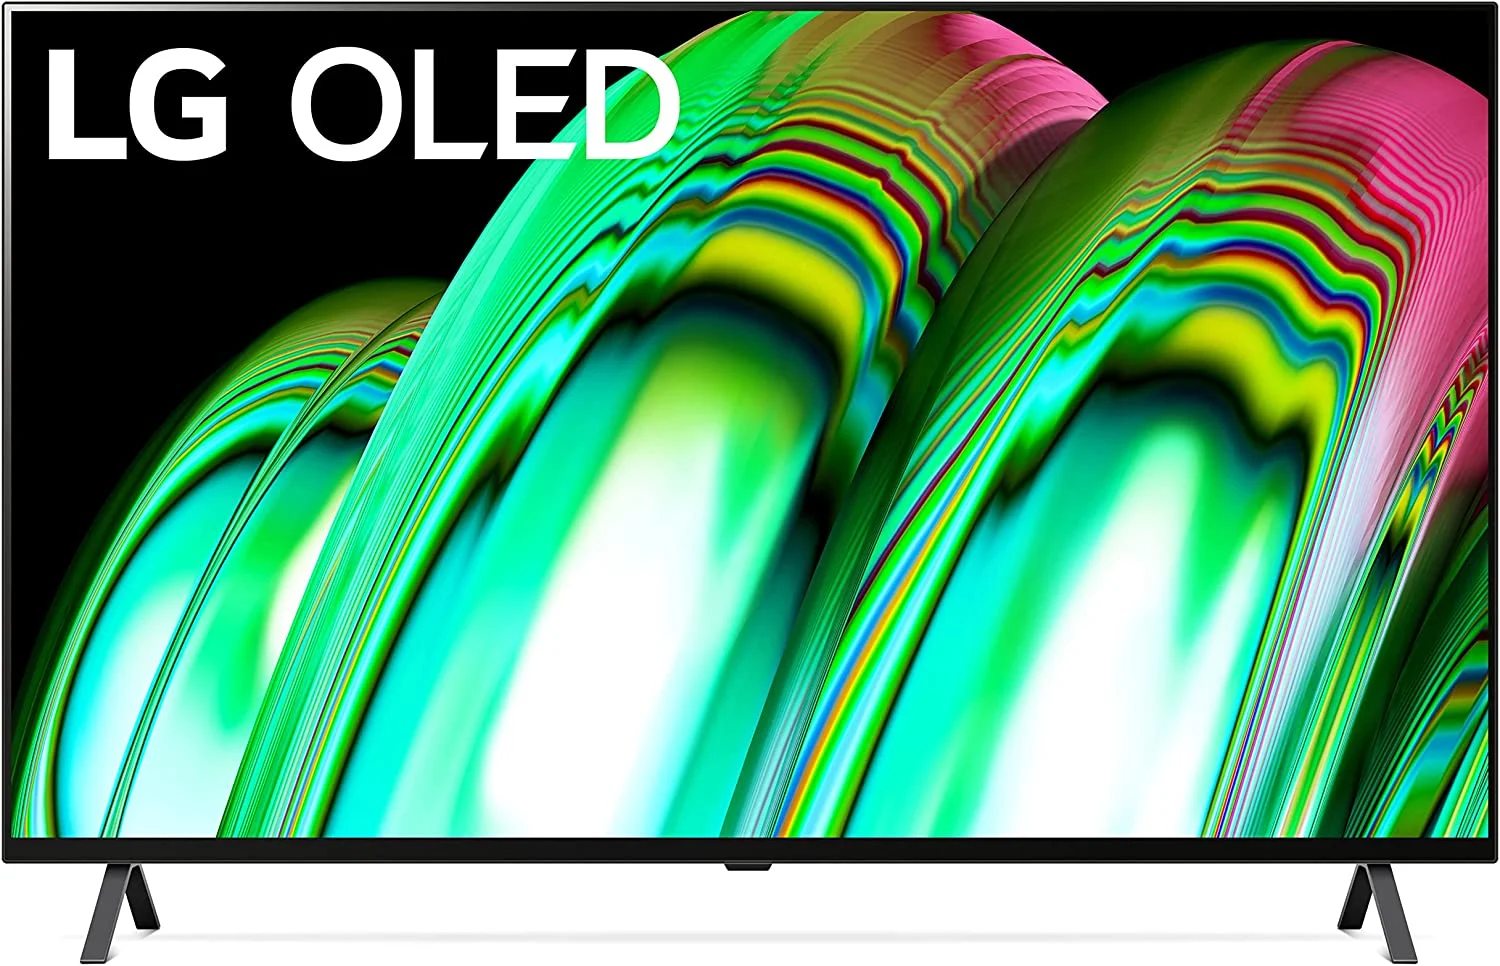 65-inch LG A2 OLED smart TV